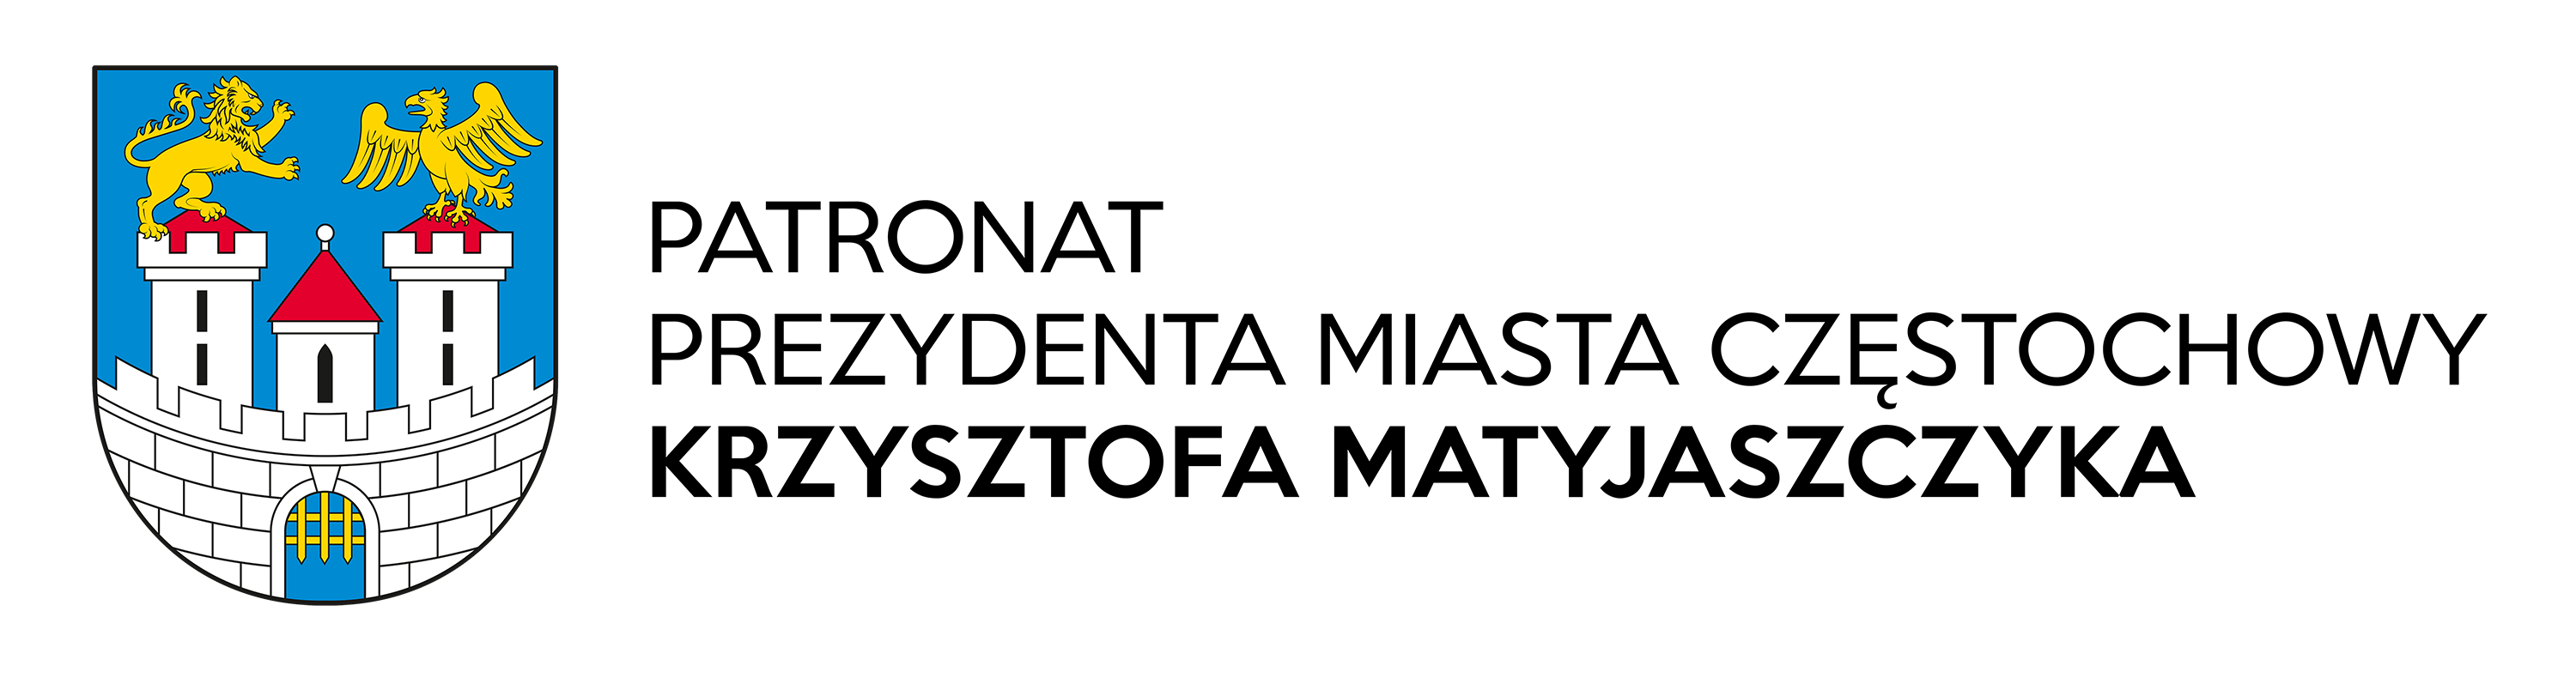 logo miasta Częstochowa oraz napis Patronat Prezydenta Miasta Częstochowy Krzysztofa Matyjaszczyka